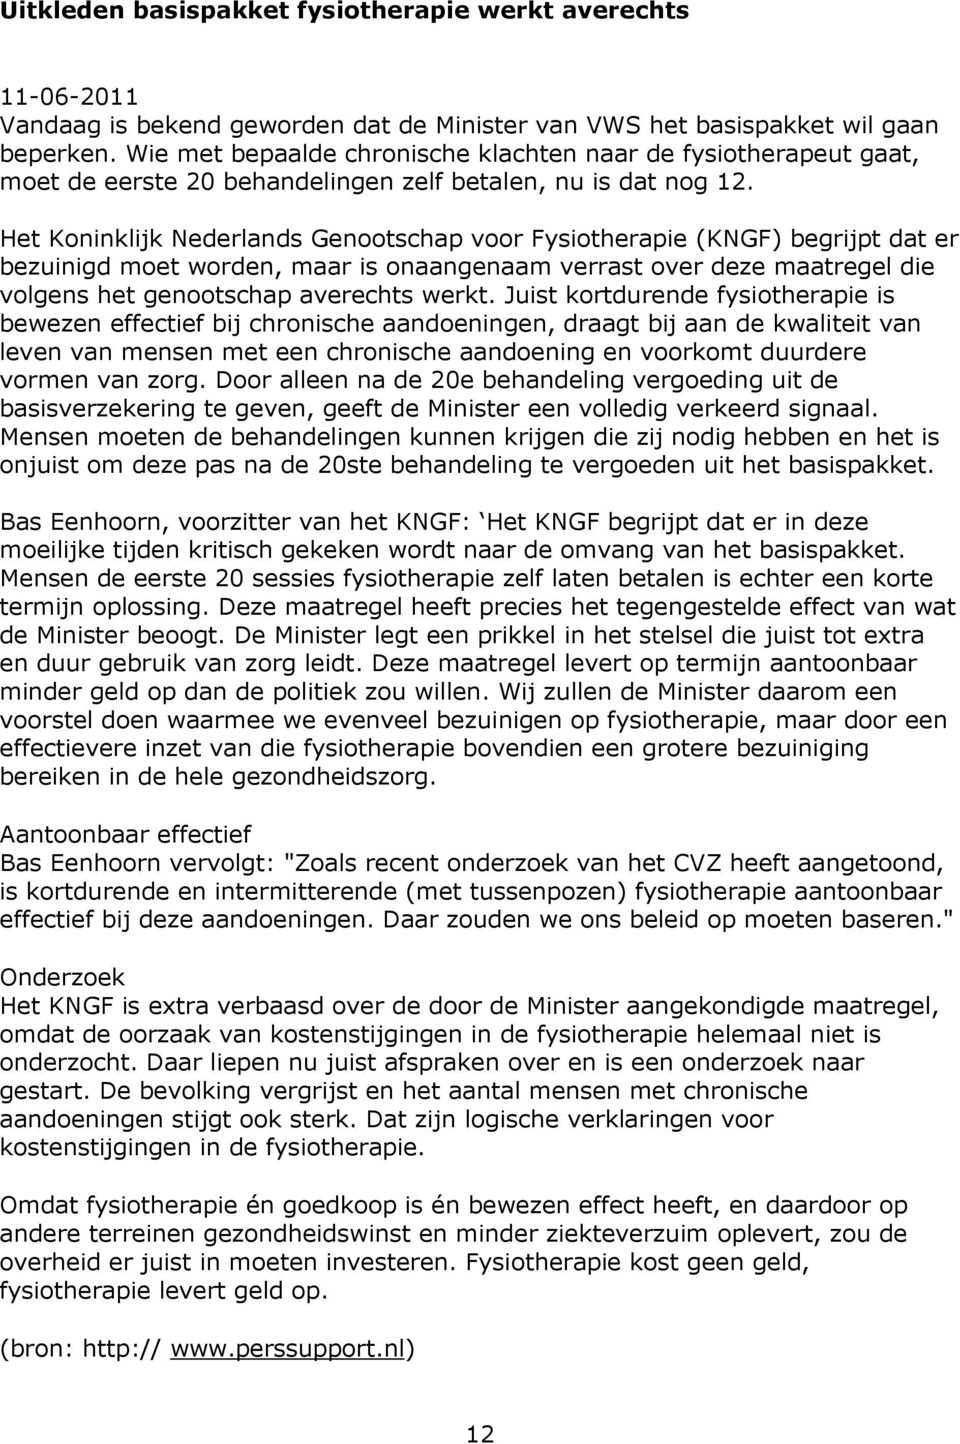 Het Koninklijk Nederlands Genootschap voor Fysiotherapie (KNGF) begrijpt dat er bezuinigd moet worden, maar is onaangenaam verrast over deze maatregel die volgens het genootschap averechts werkt.